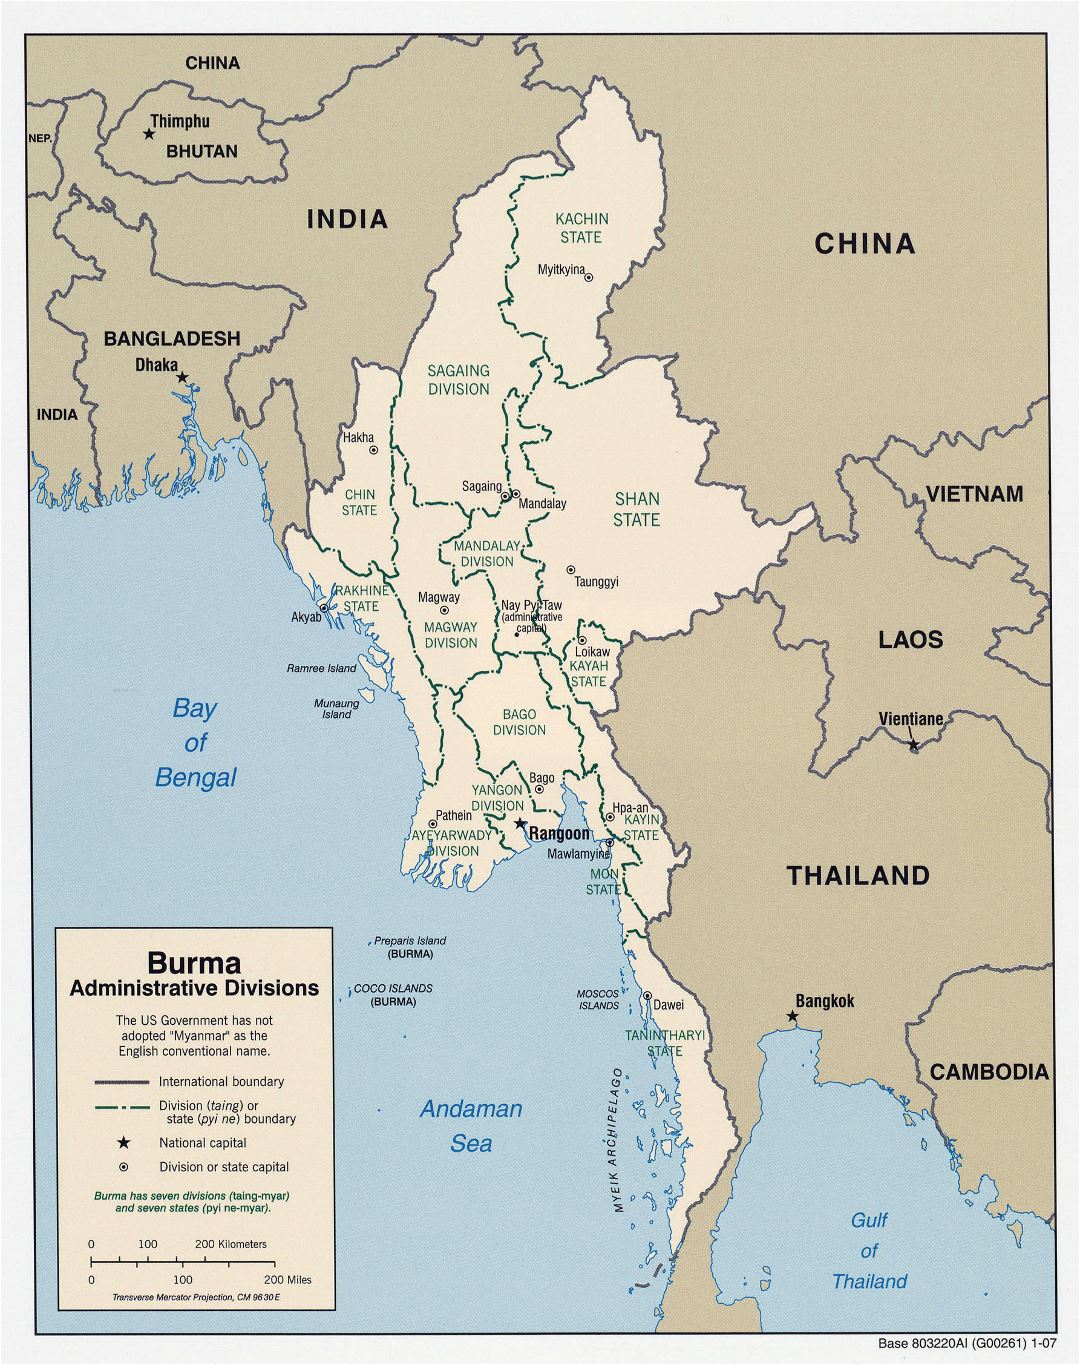 Grande detallado mapa de administrativas divisiones de Birmania (Myanmar) - 2007